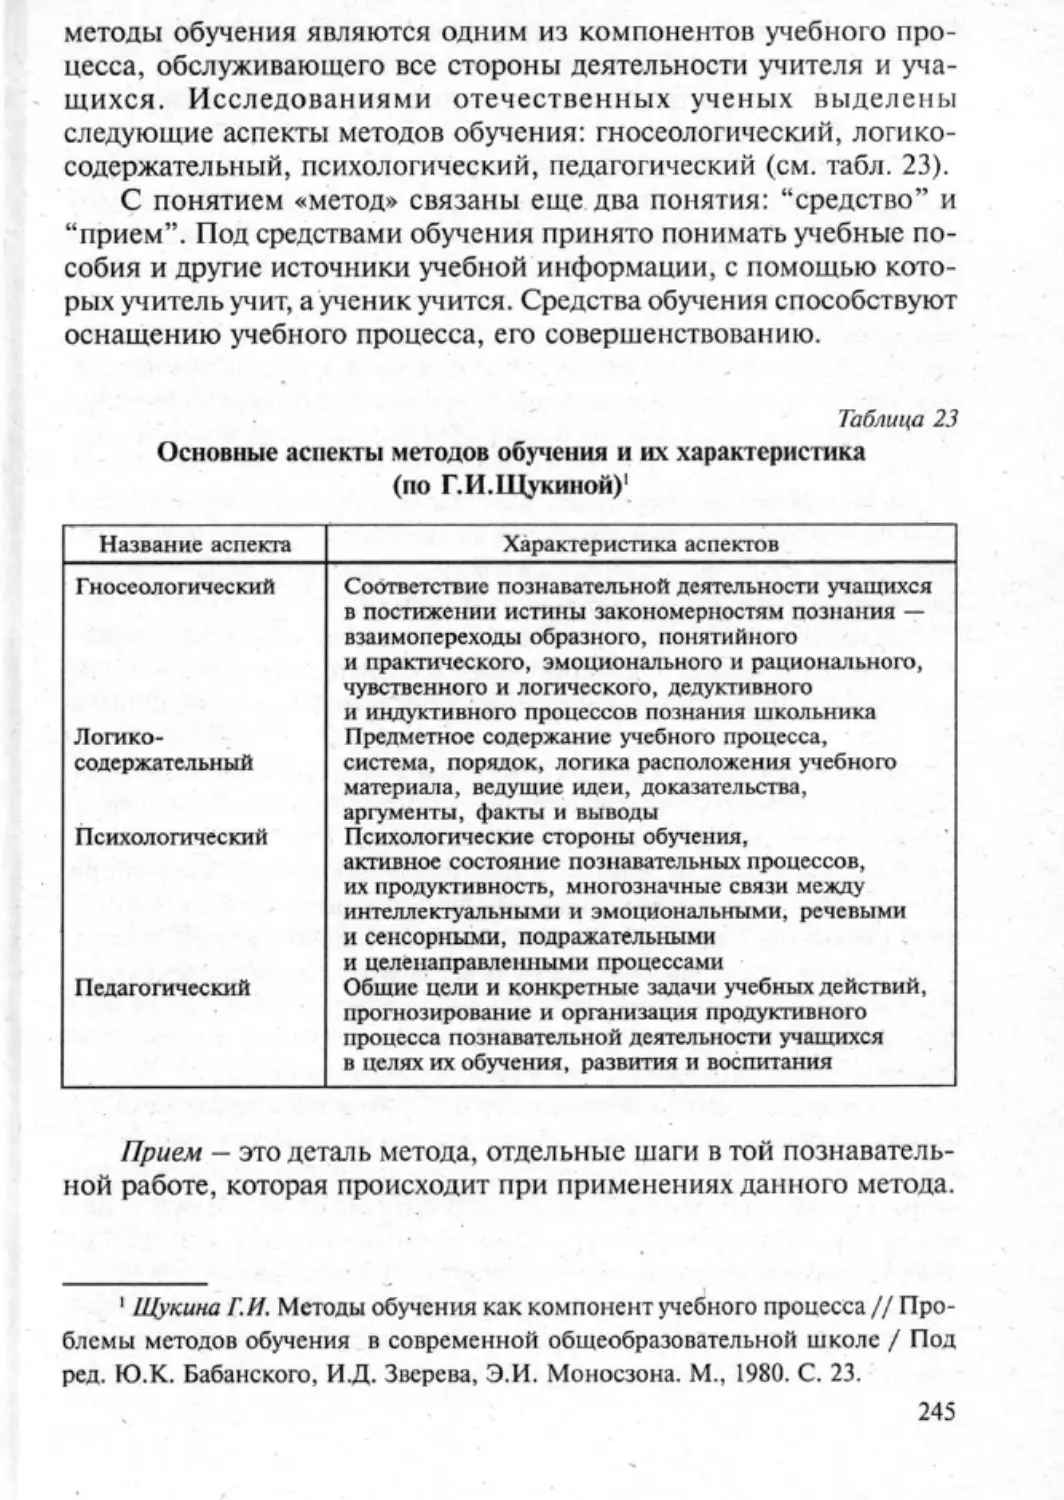 Загрекова Л.В., Николаева В.В - 0246